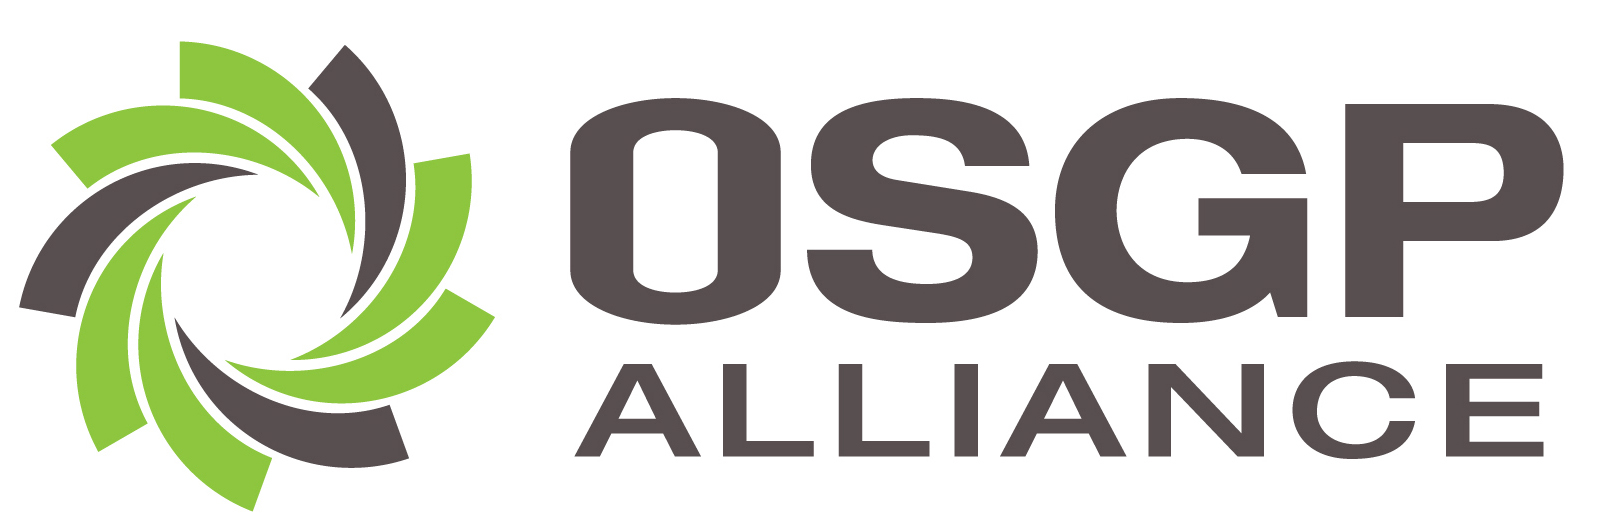 OSGP.Alliance